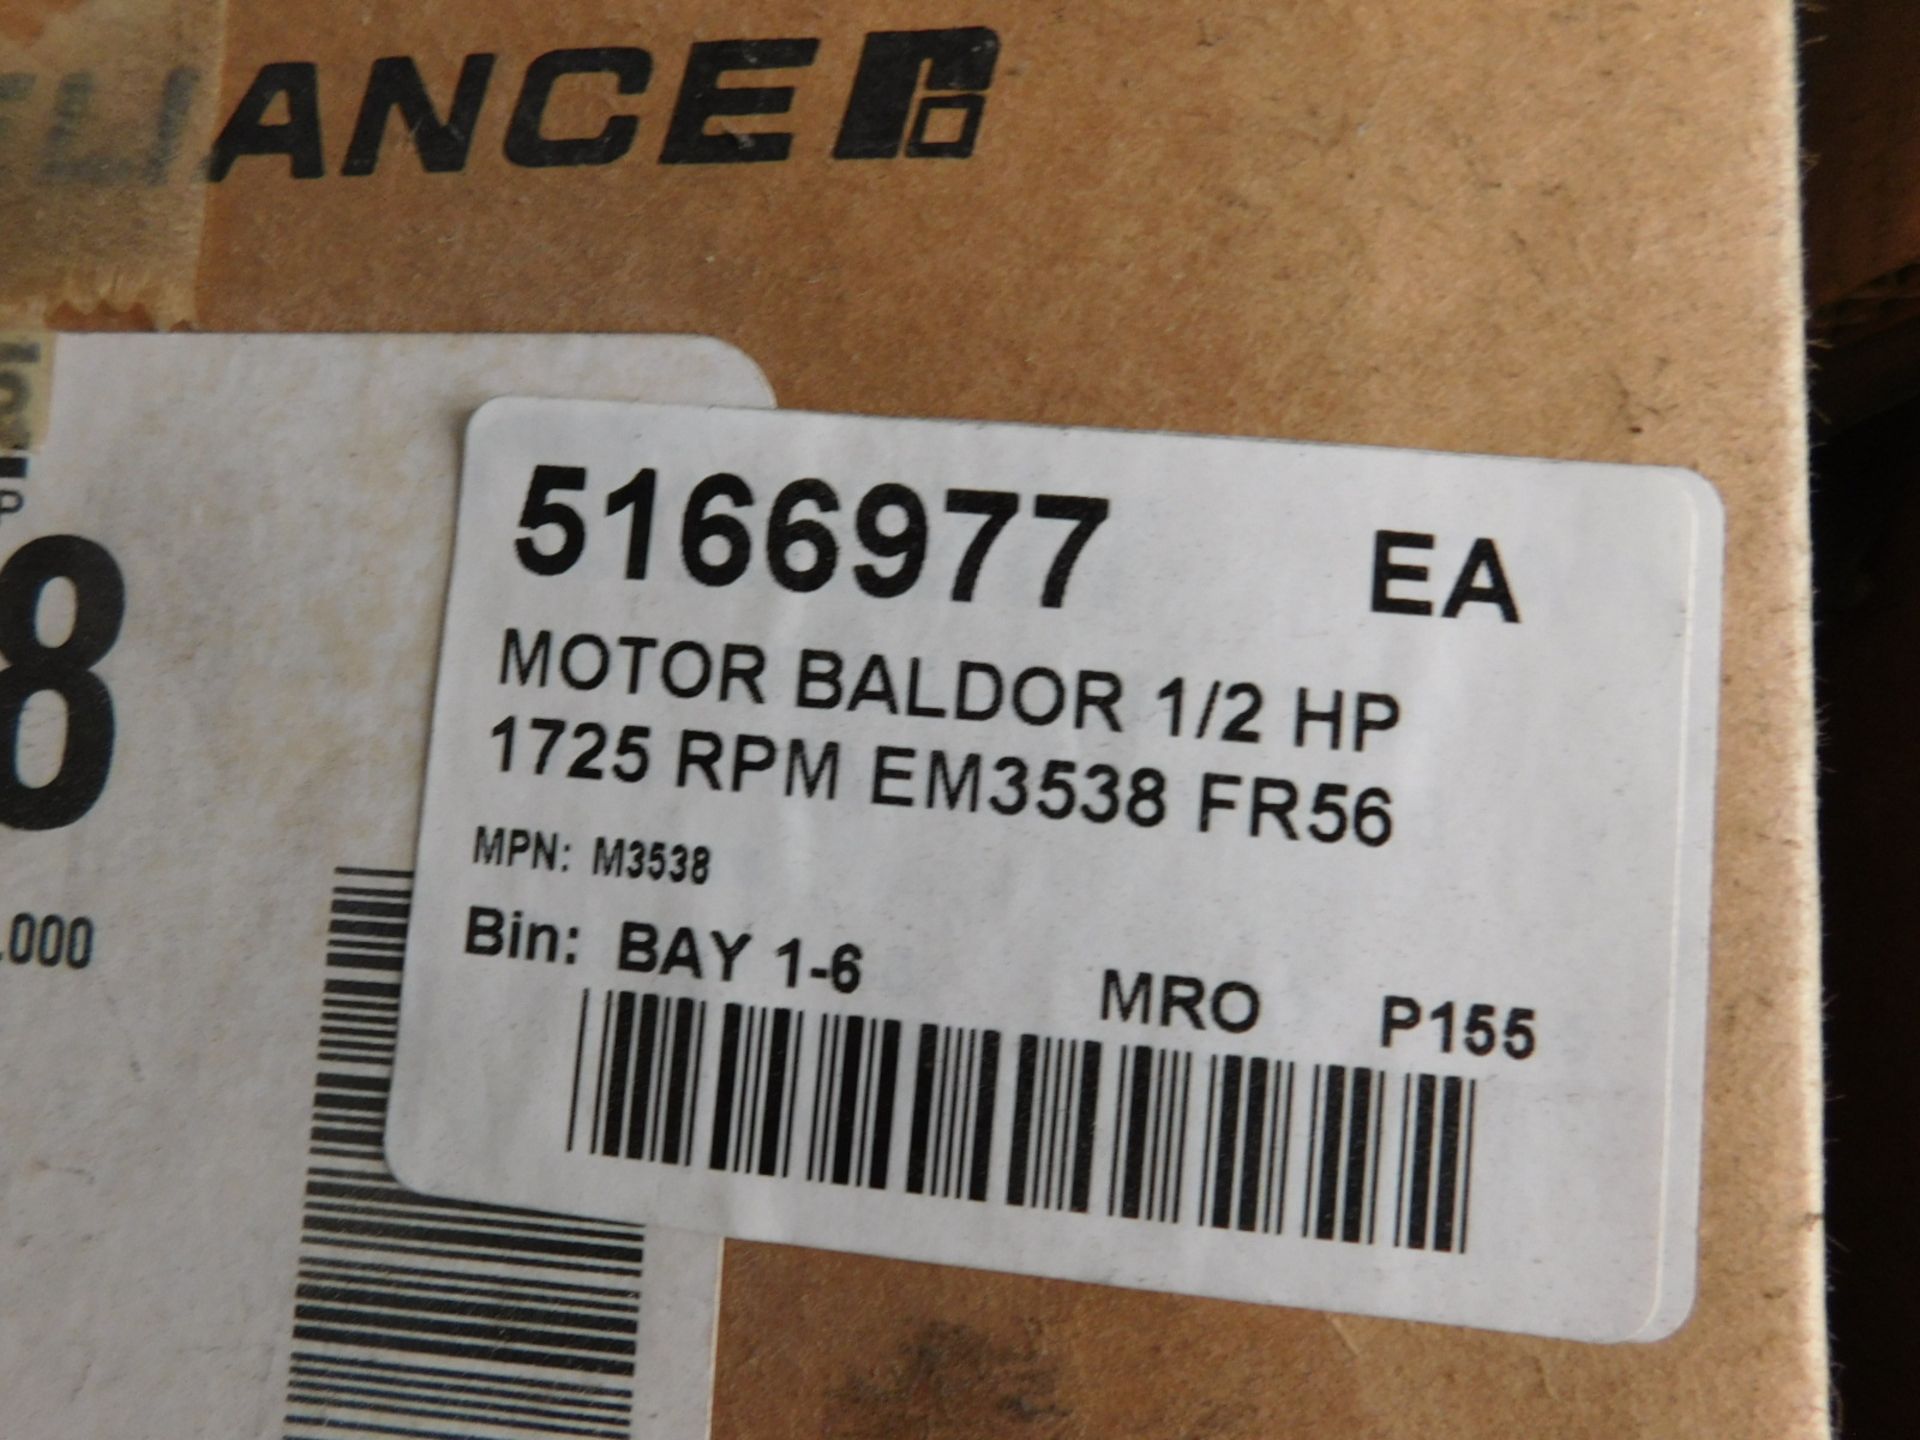 BALDOR EM3538 1/2 HP MOTOR, FRAME 56, 1725 RPM, S/N: N/A (DELAYED PICKUP - FEBRUARY 15, 2021)